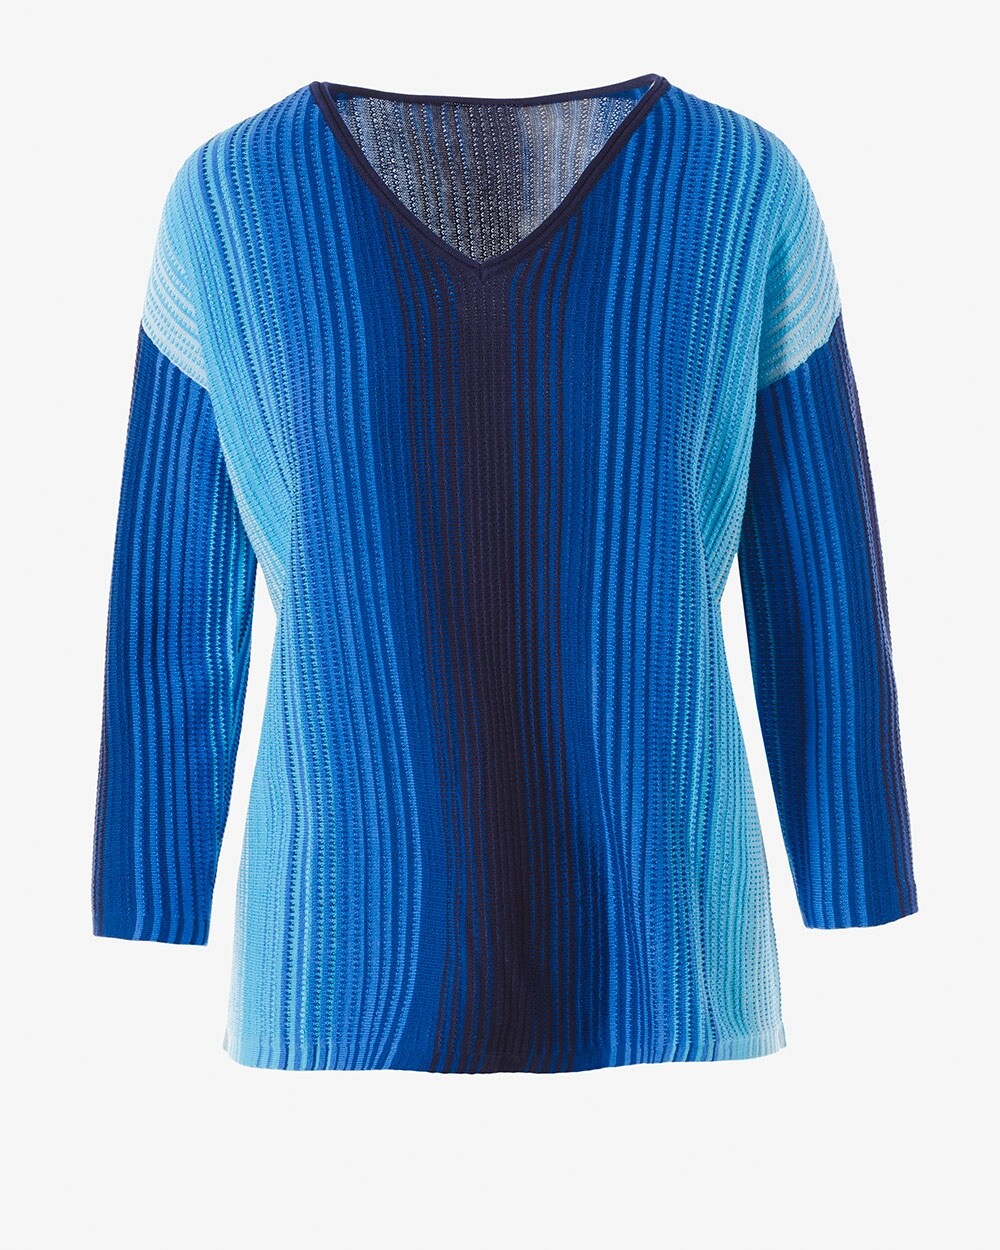 Ombr\u00E9 Stripe Pullover Sweater